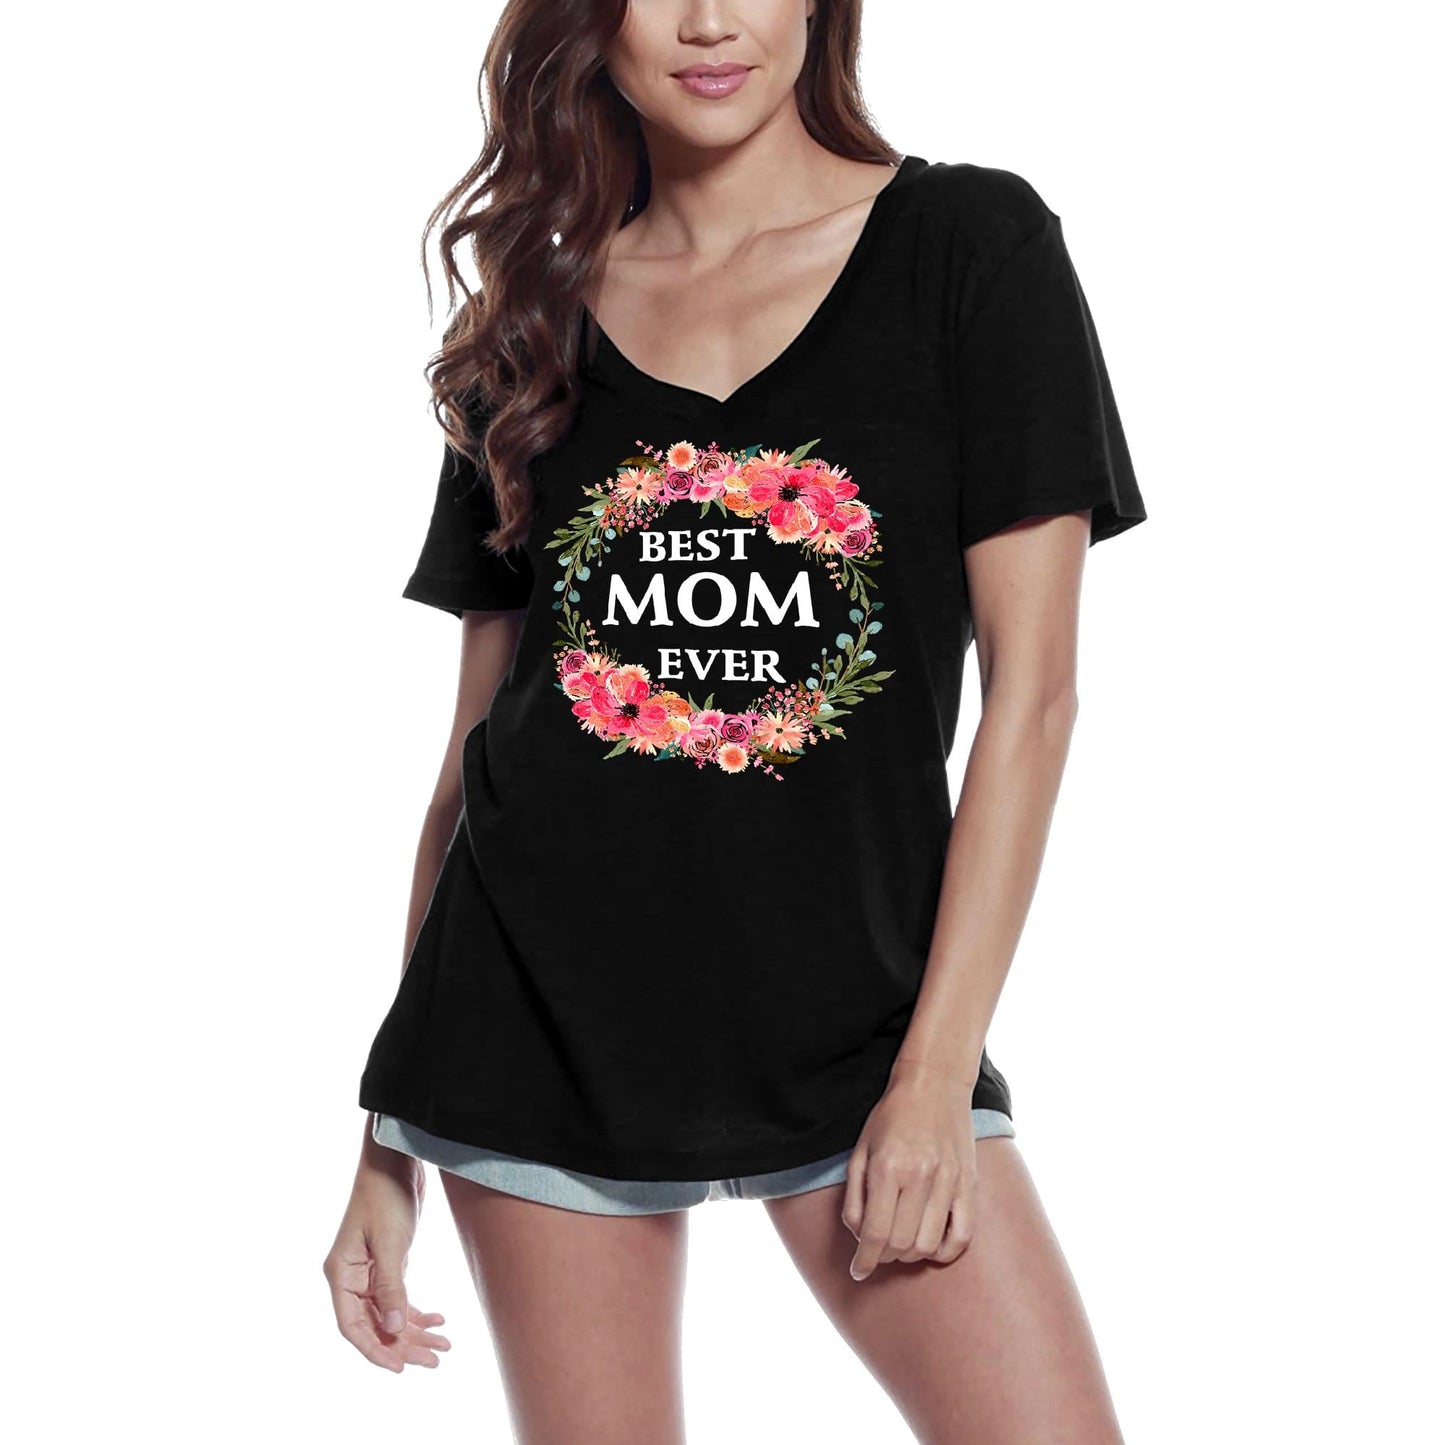 ULTRABASIC Women's V-Neck T-Shirt Best Mom Ever - Funny Mother Tee Shirt for Ladies